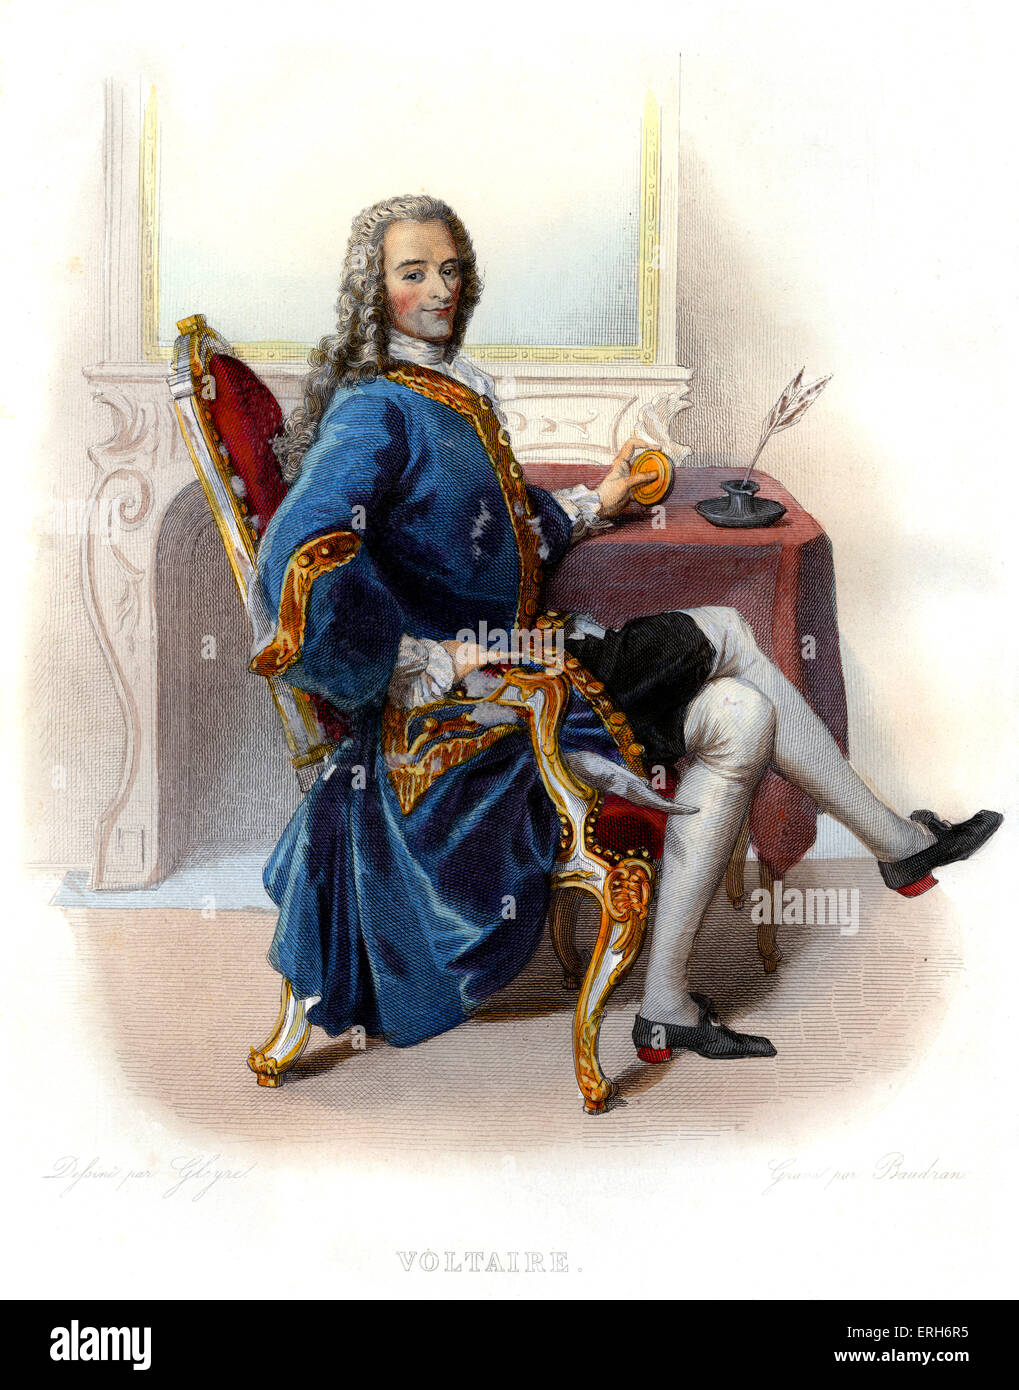 François-Marie Arouet, connu sous le nom de plume Voltaire. L'écrivain français des lumières, historien et philosophe. 1694 - 1778. Banque D'Images